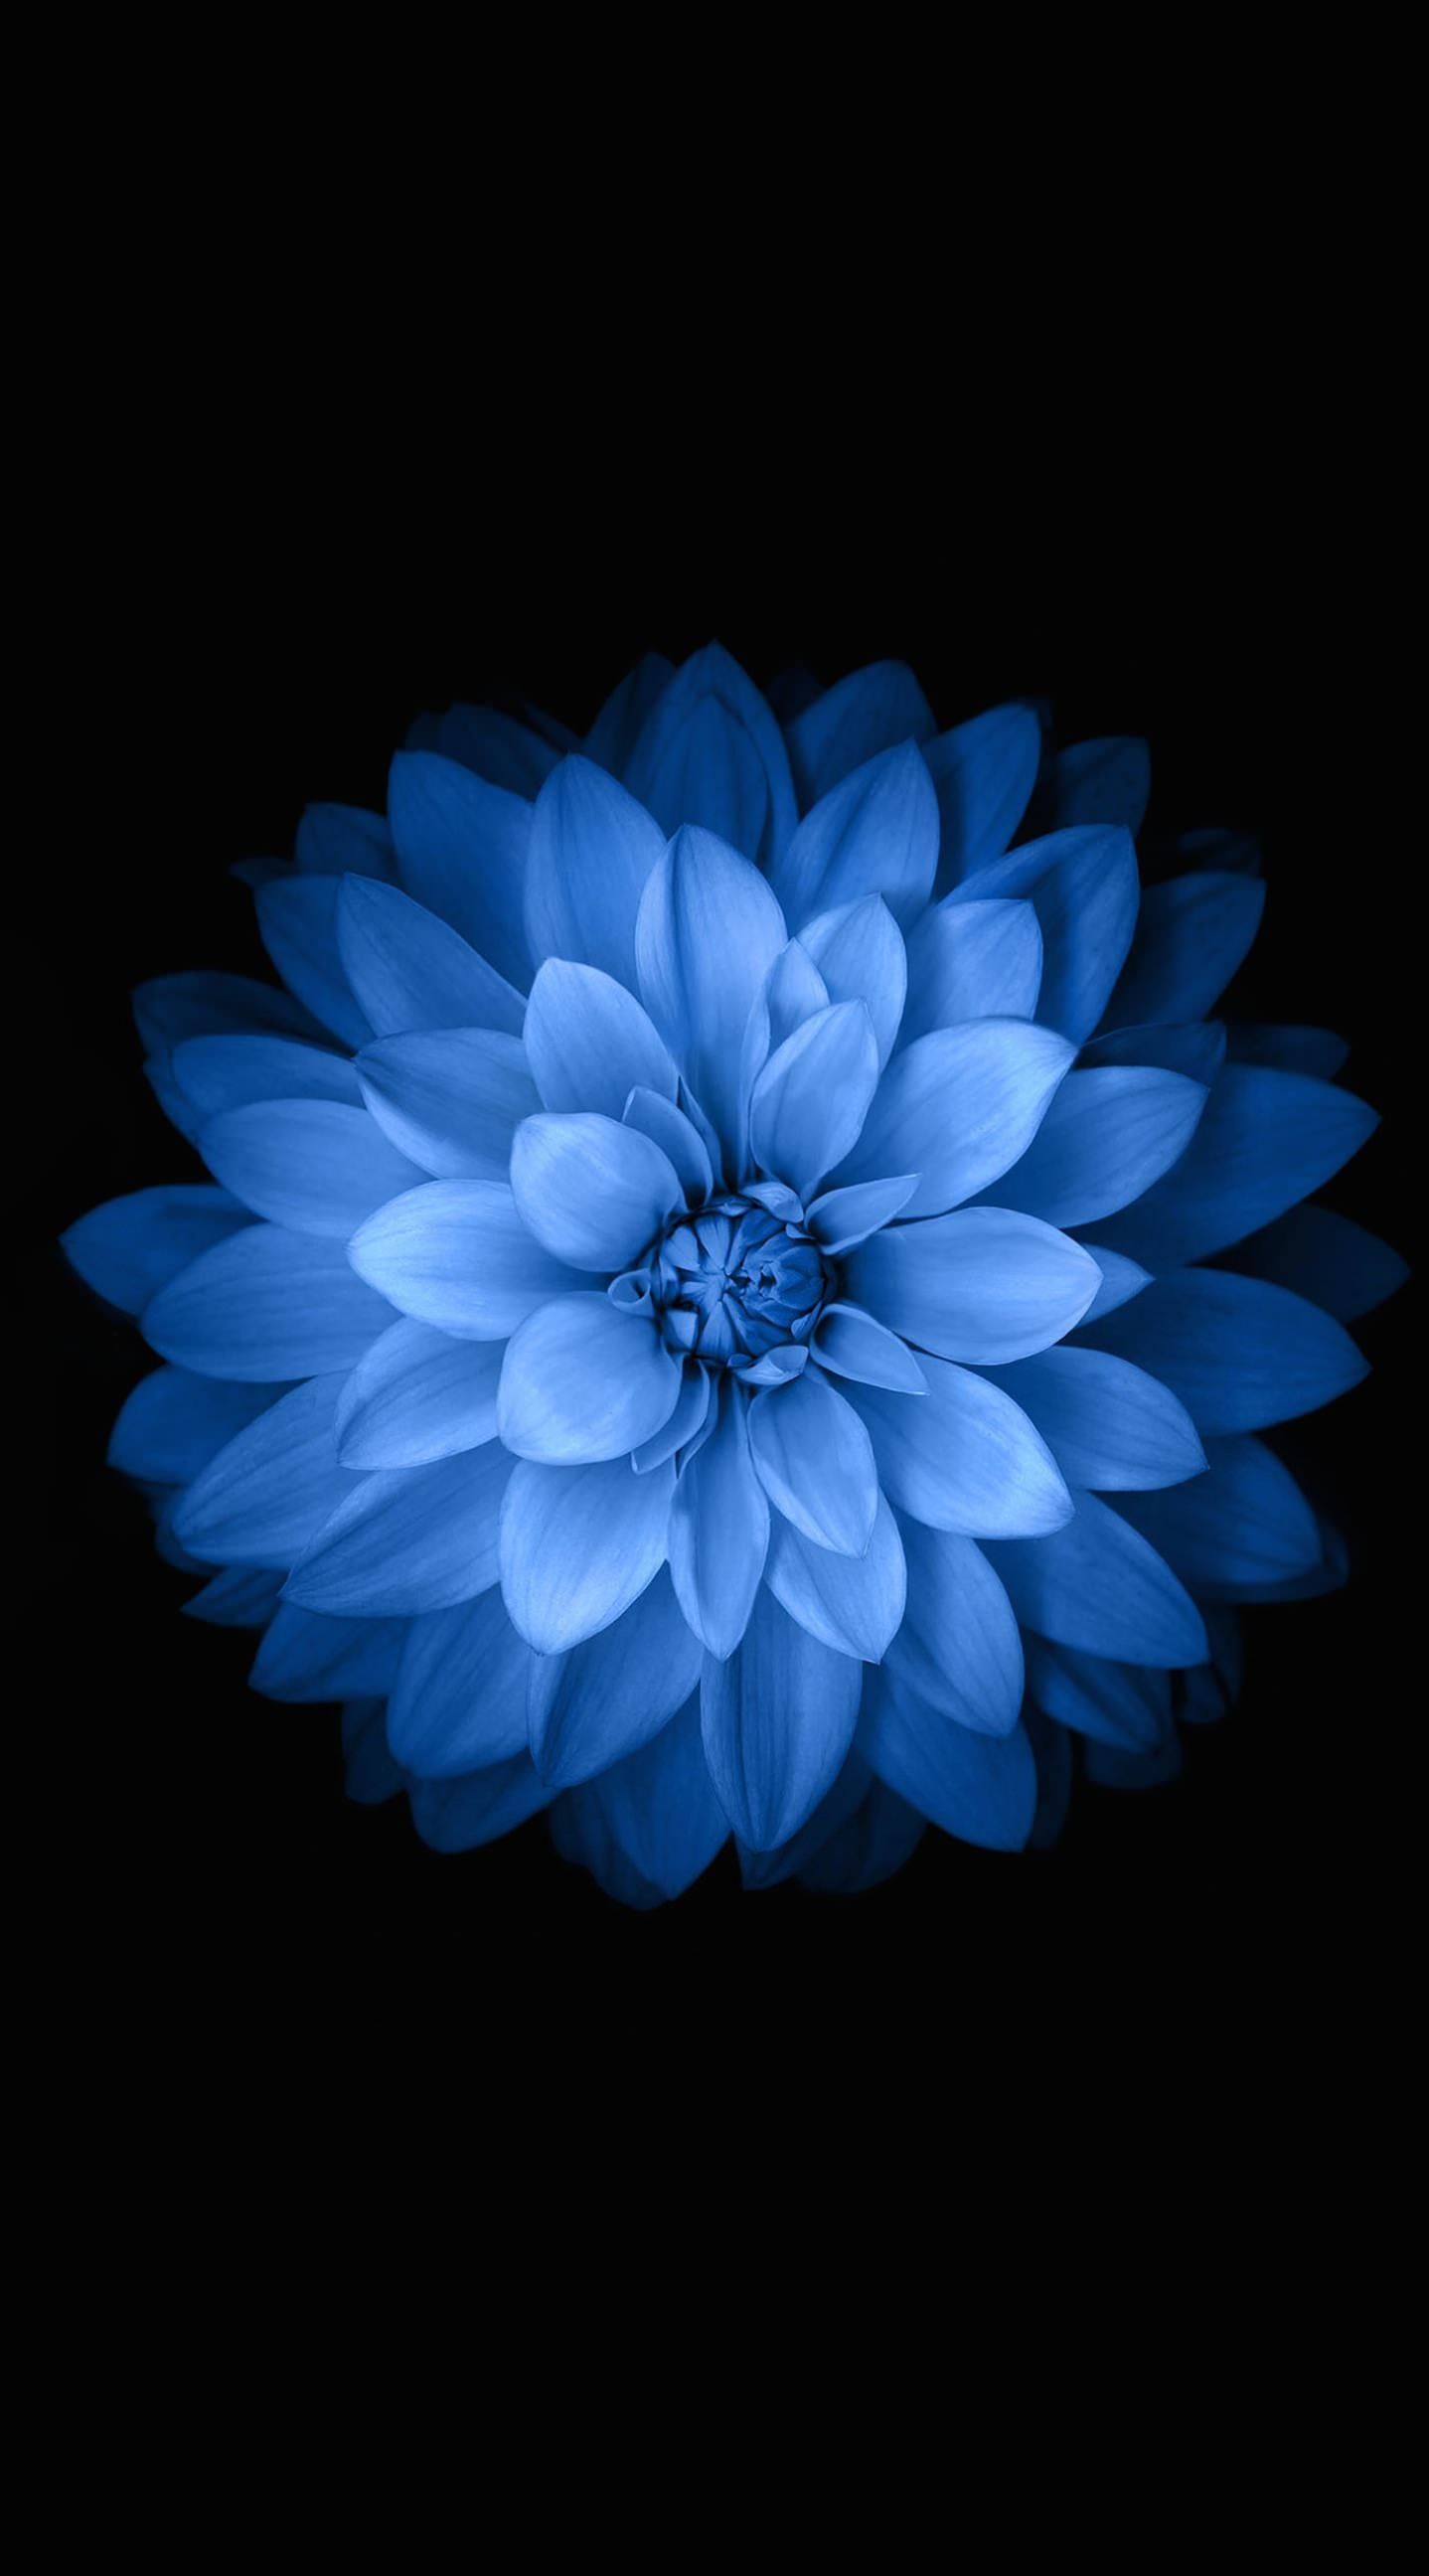 Blue Flower iPhone Wallpaper .wallpaperaccess.com